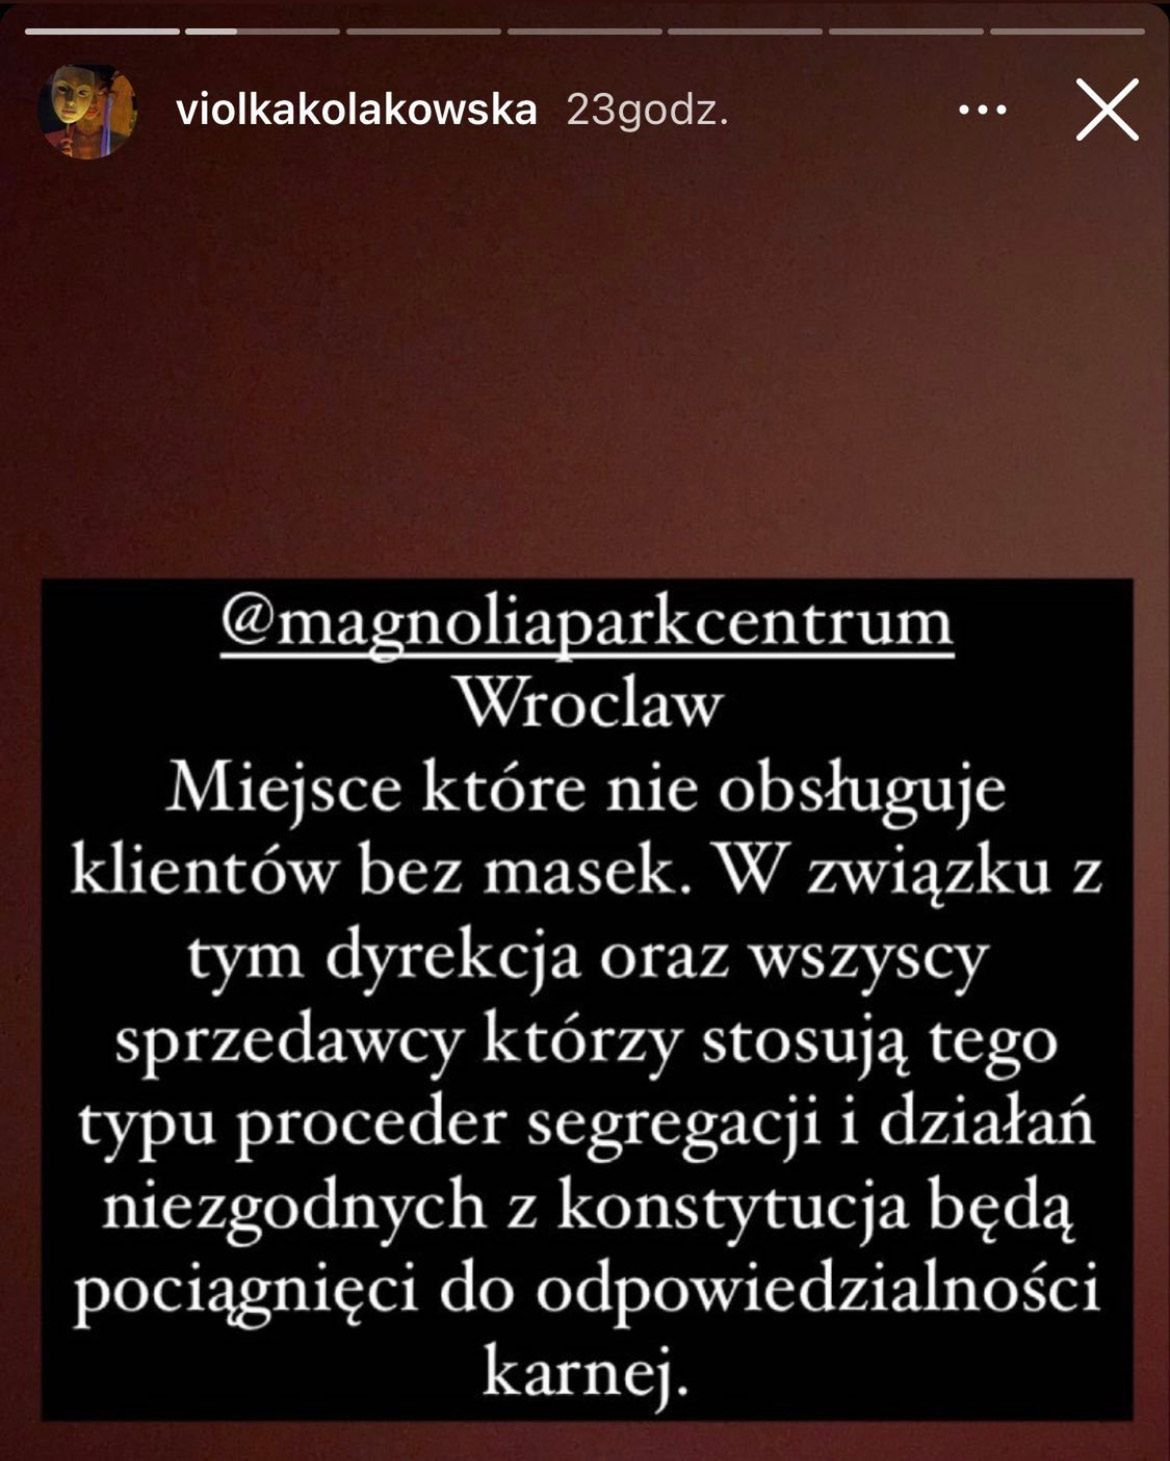 Viola Kołakowska zapowiada wojnę przeciwko sprzedawcom z Wrocławia